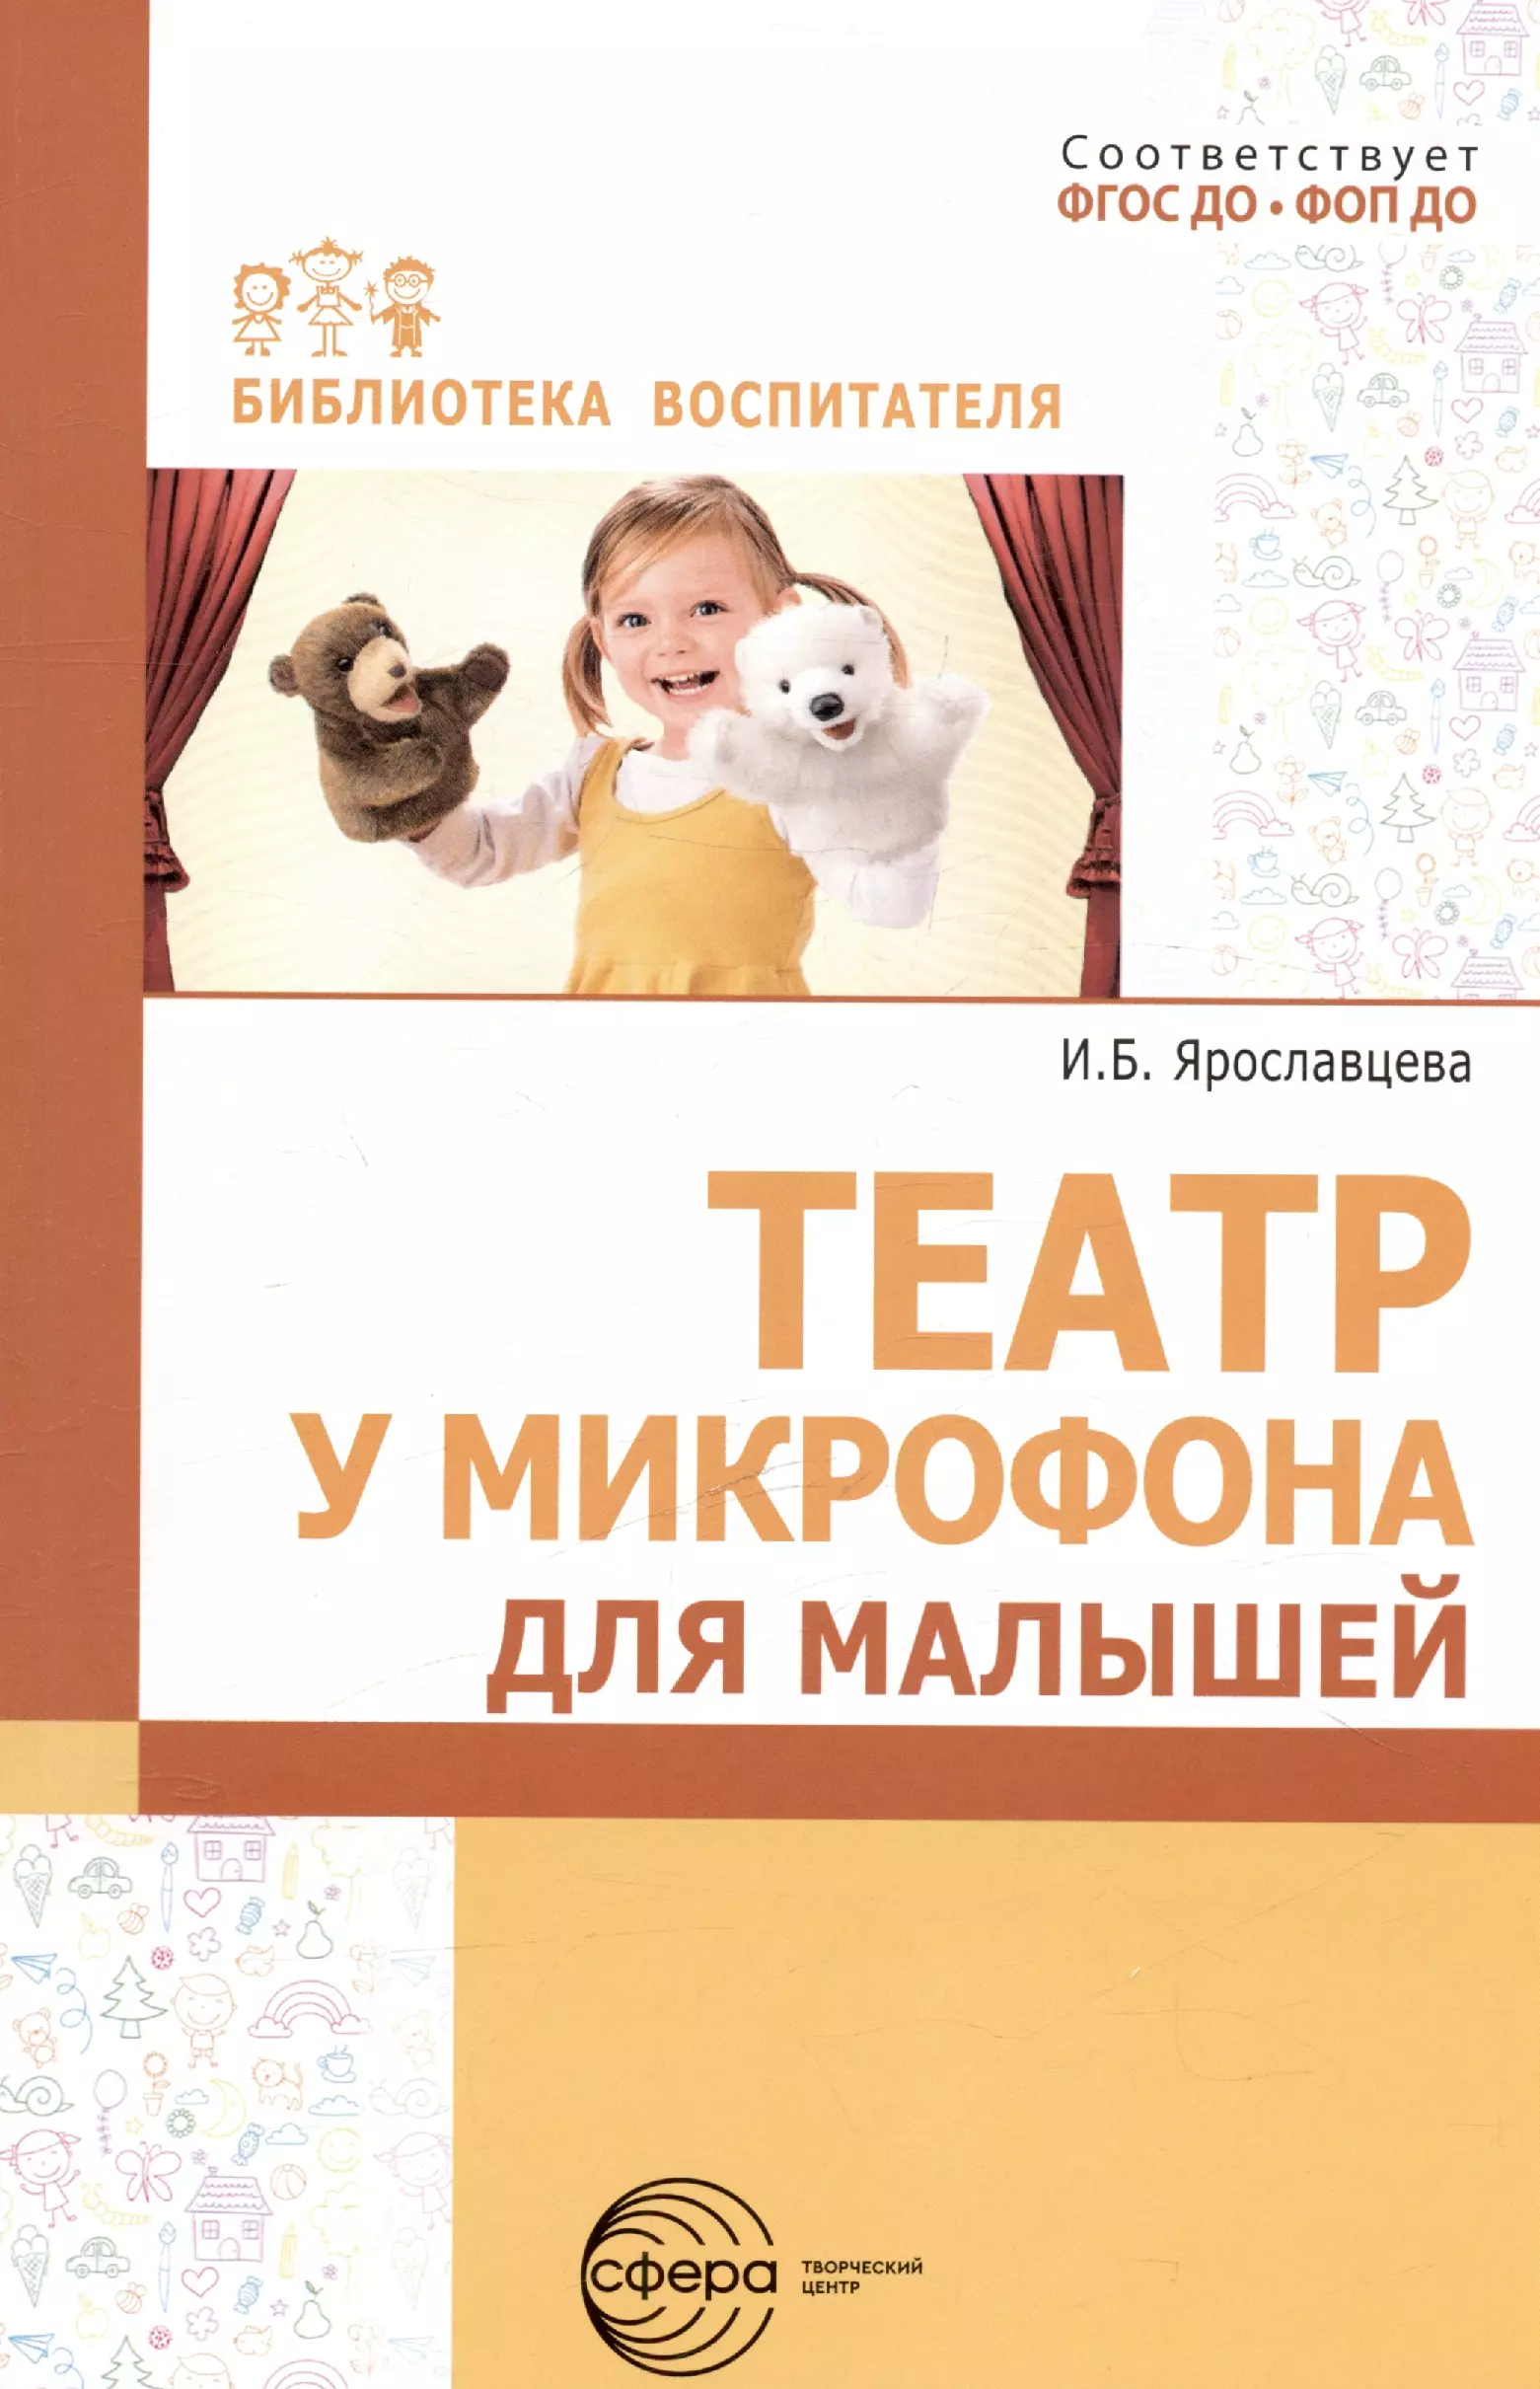 Ярославцева Инна Борисовна Театр у микрофона для малышей